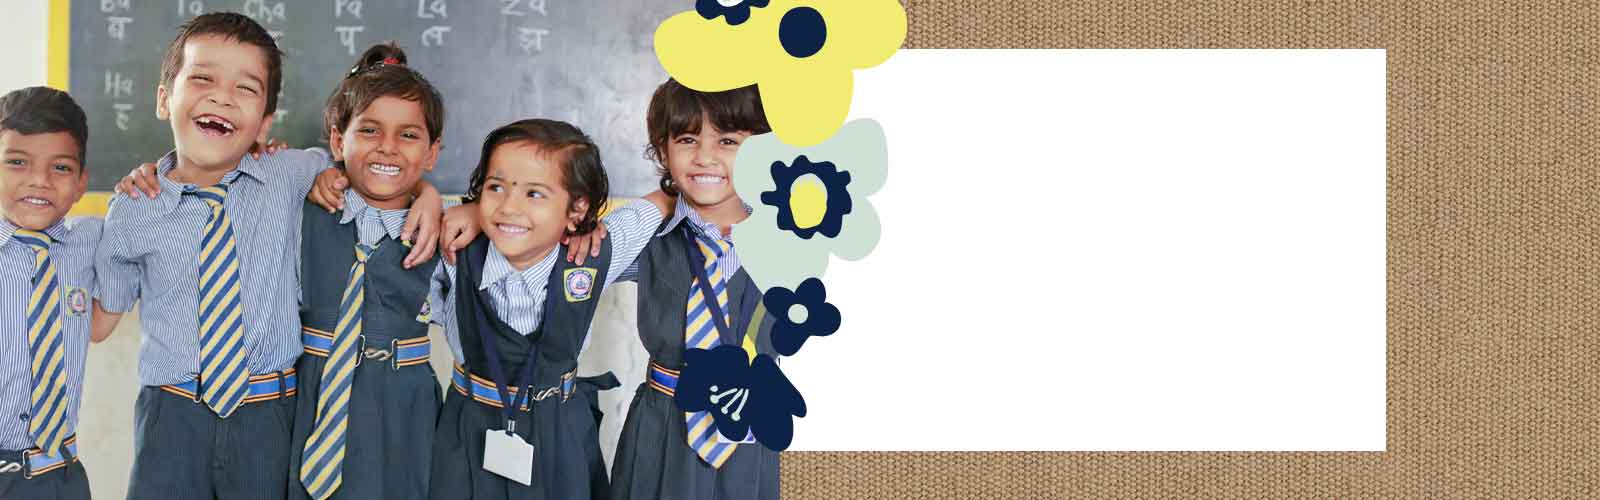 Children with school uniform around arms